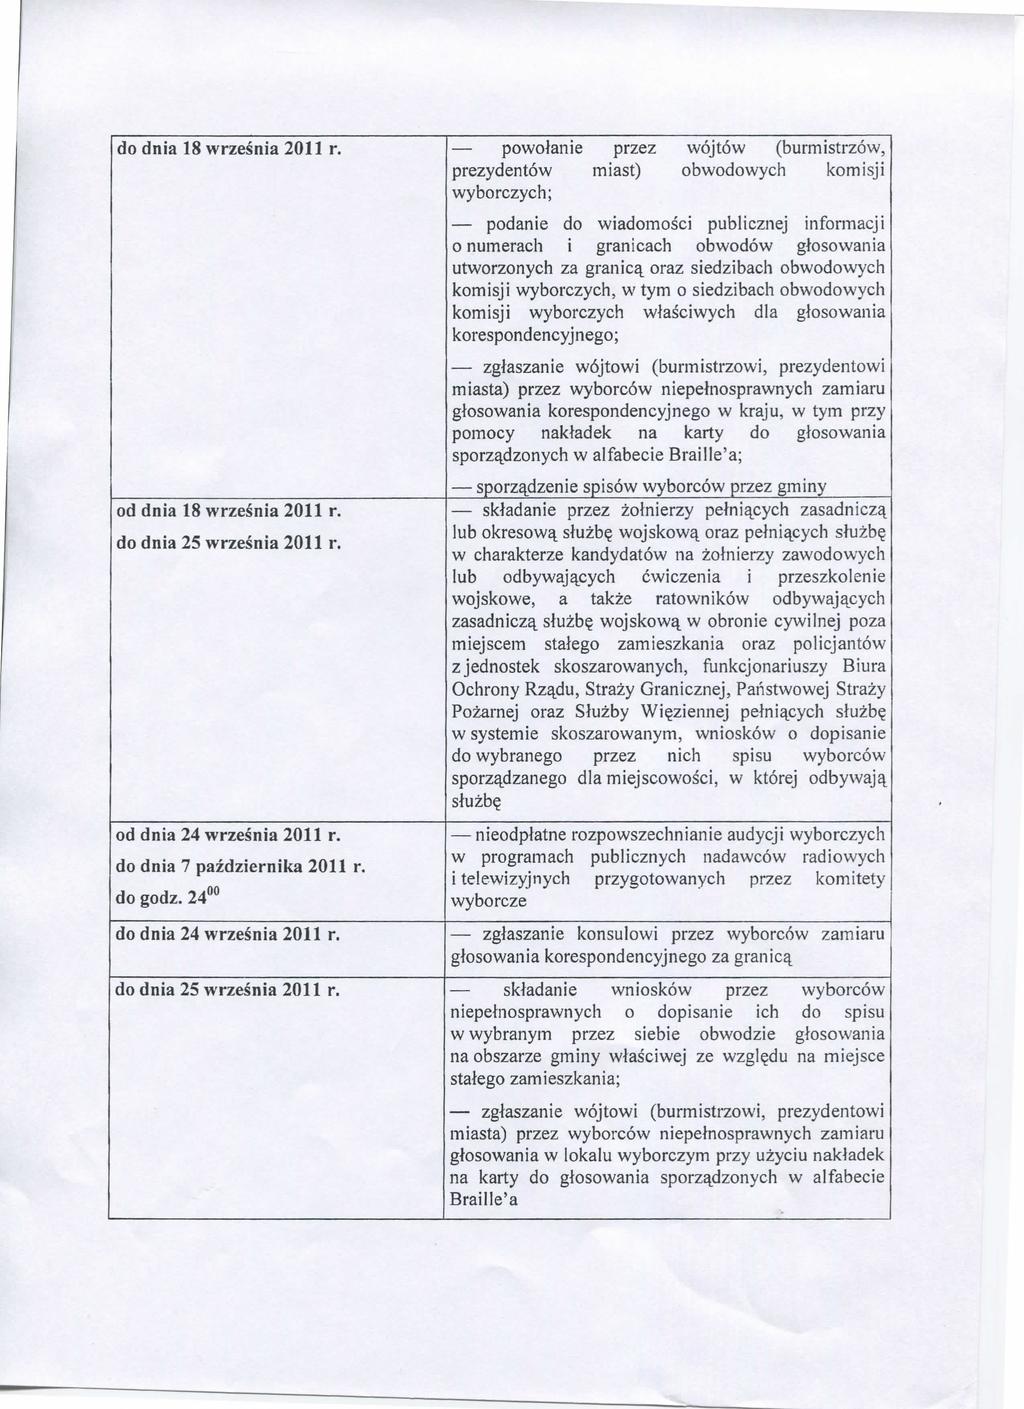 do dnia 18 wrzesnia 2011 r. powolanie przez wqjtow (burmistrzow, prezydentow miast) obwodowych komisji wyborczych; od dnia 18 wrzesnia 2011 r. do dnia 25 wrzesnia 2011 r. od dnia 24 wrzesnia 2011 r.